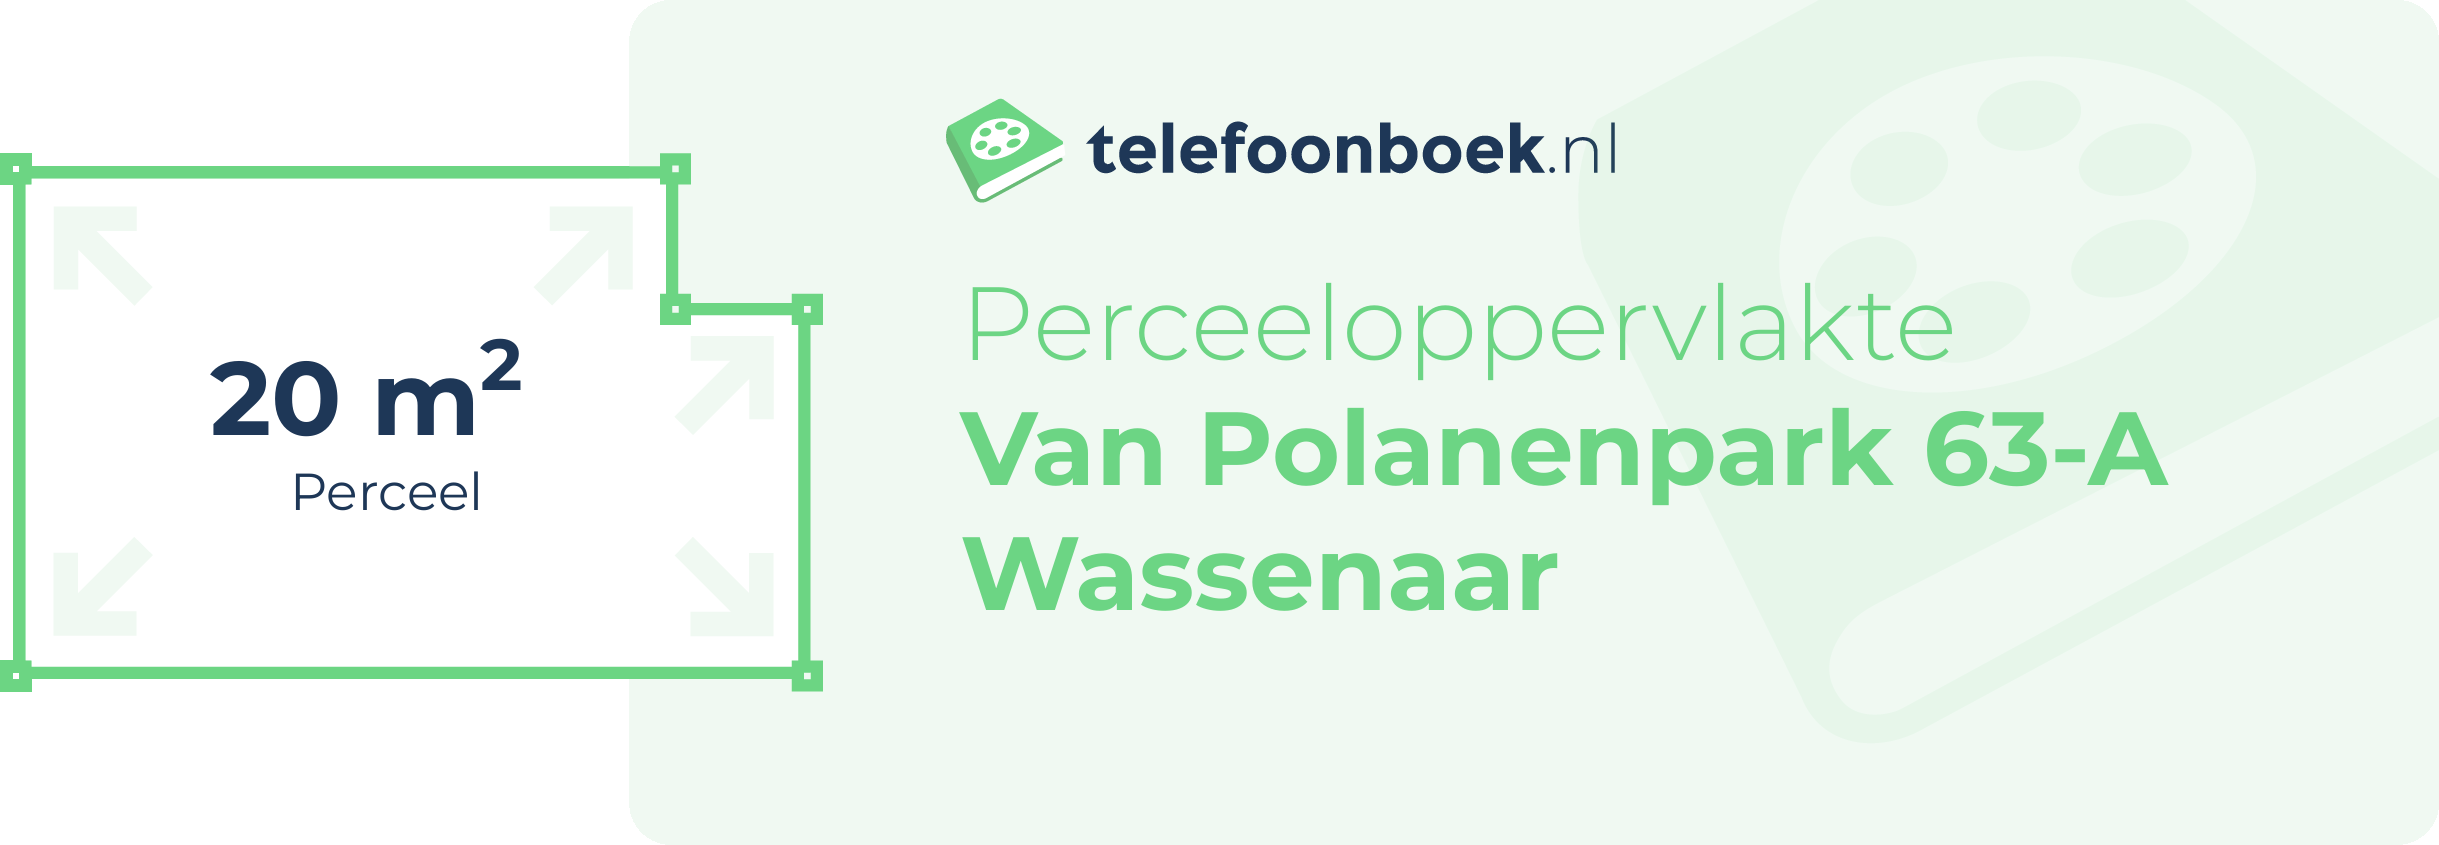 Perceeloppervlakte Van Polanenpark 63-A Wassenaar